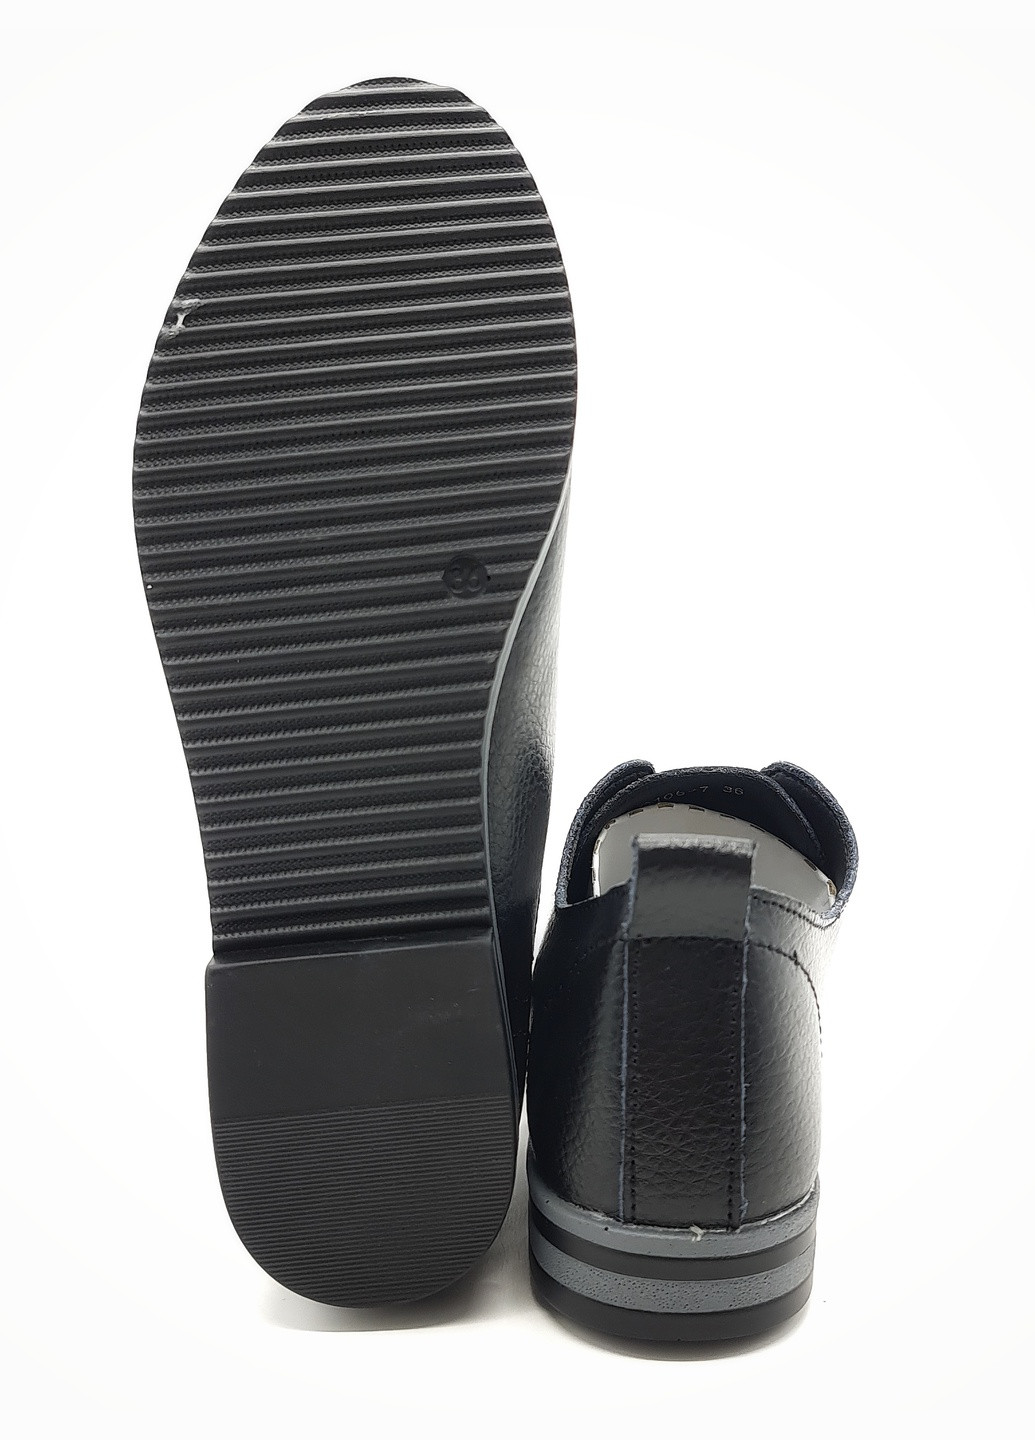 Женские туфли черные кожаные KD-14-1 230 мм (р) Kadisailun